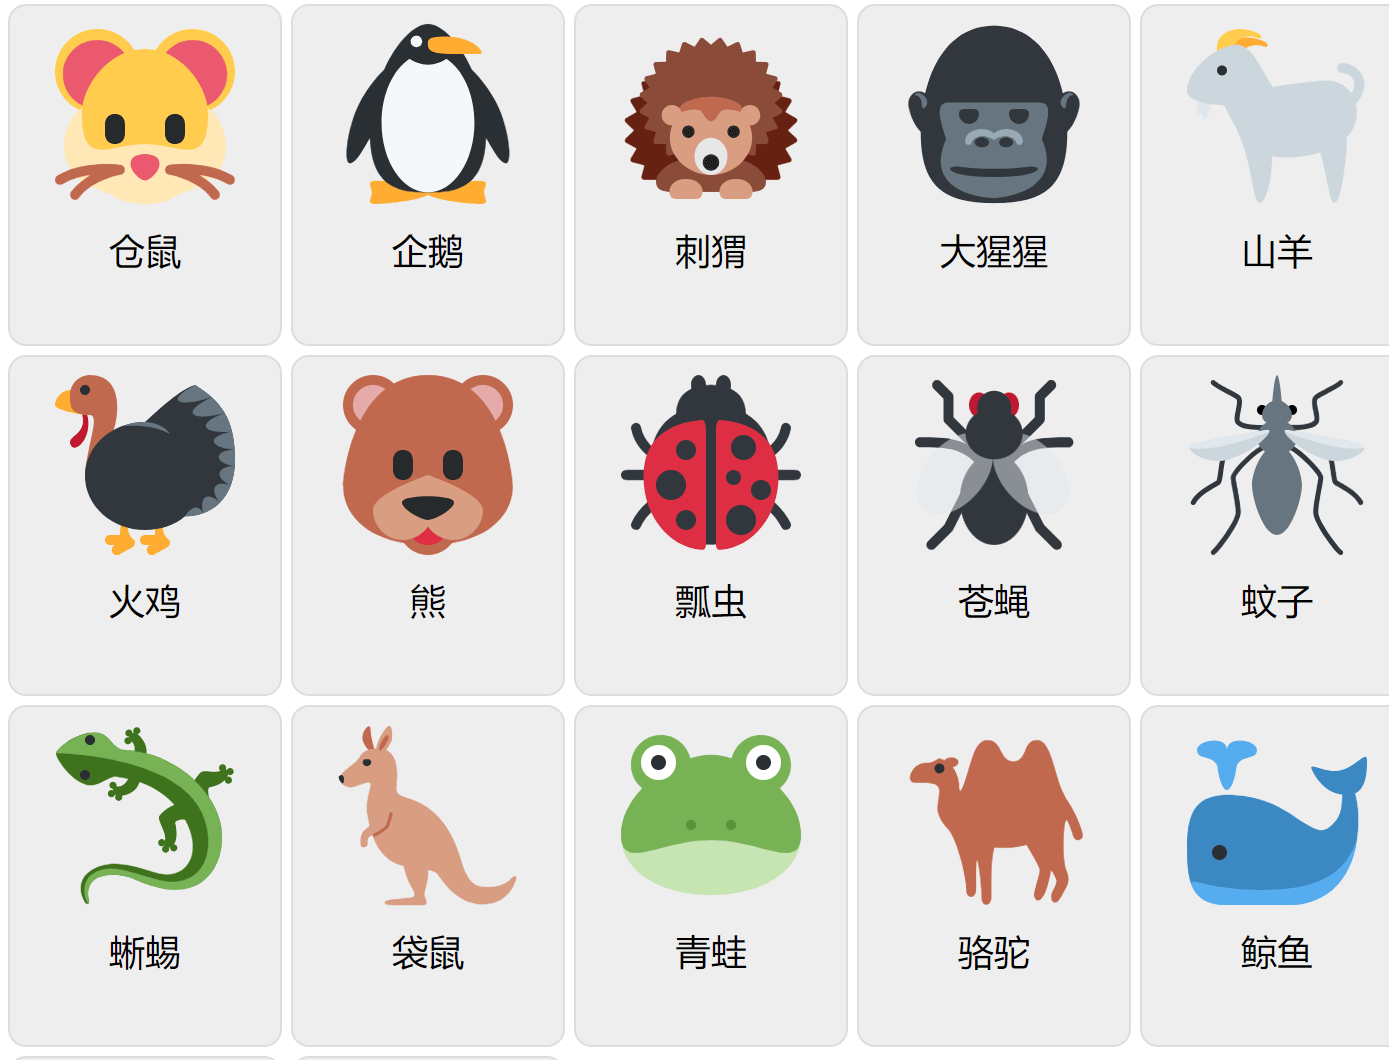 Djur på kinesiska 2